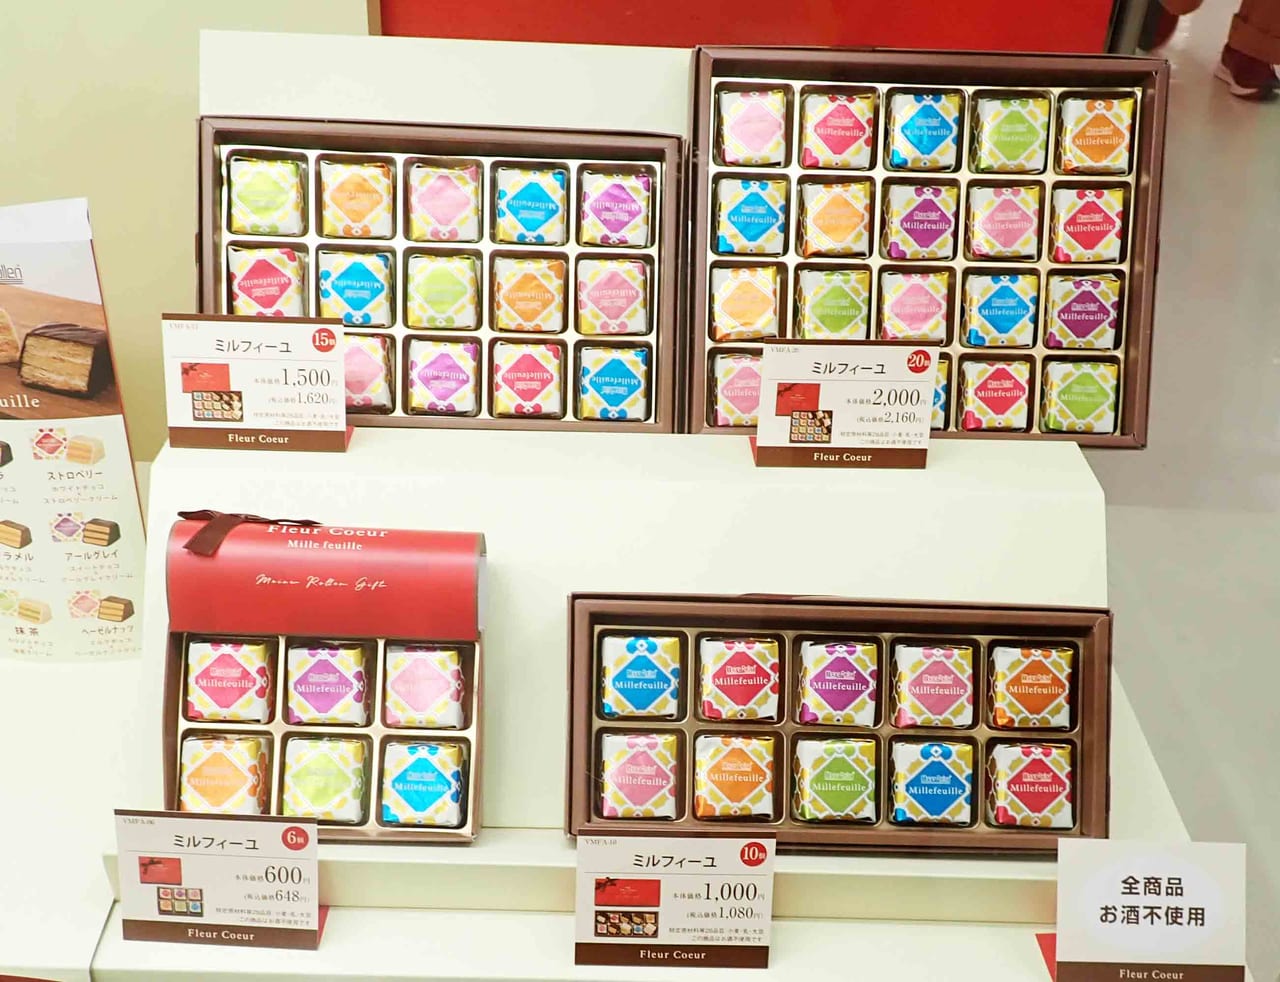 『丸広百貨店』で開催中の「バレンタイン ショコラ ミュージアム」で売られているチョコレート